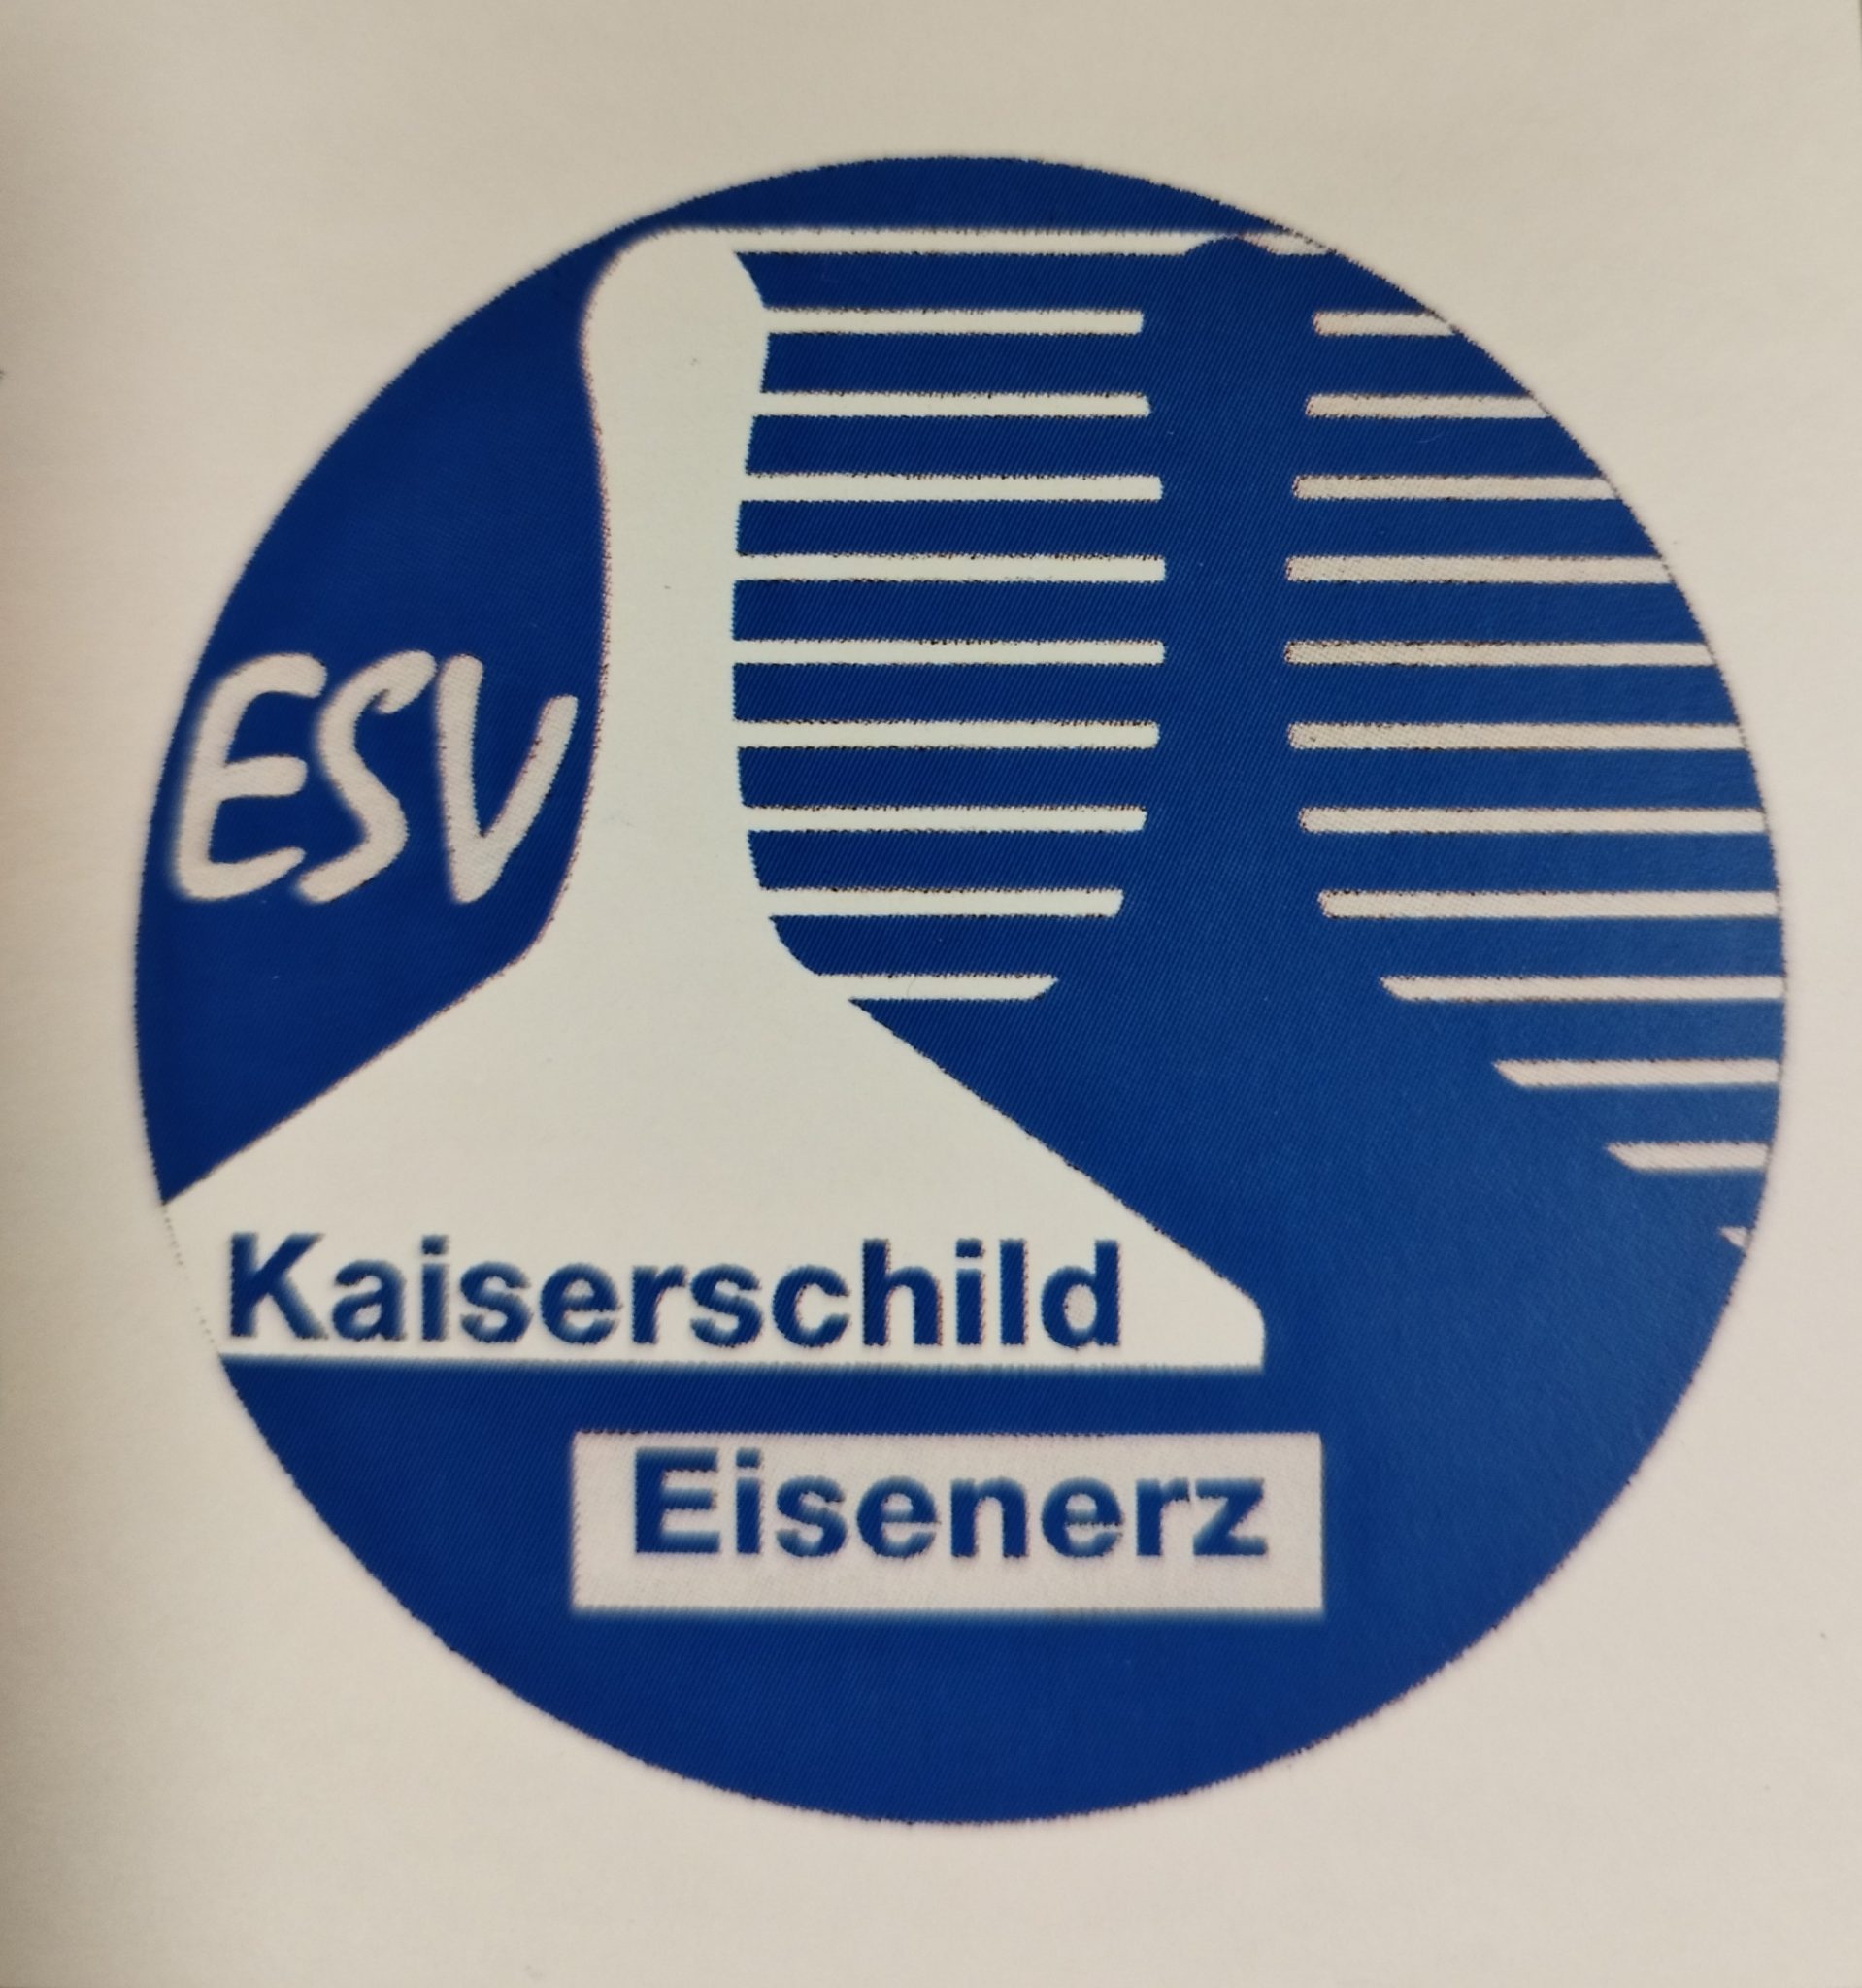 ESV Kaiserschild Eisenerz